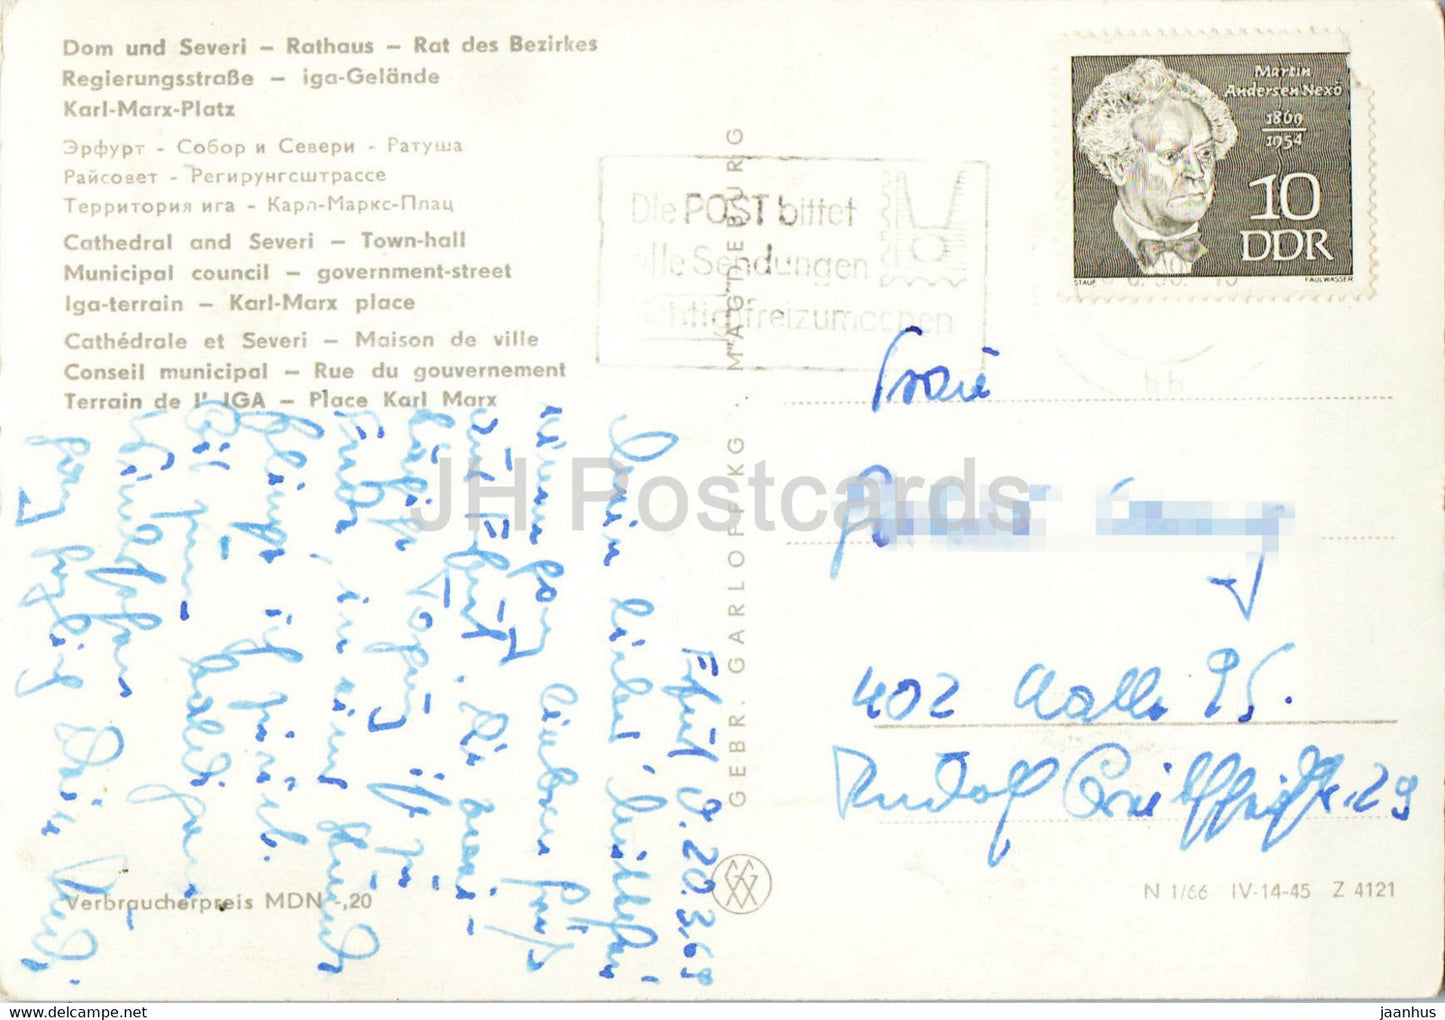 Erfurt - Dom und Severi - Rathaus - Regierungsstrasse - Karl Marx Platz - old postcard - 1969 - Germany DDR - used